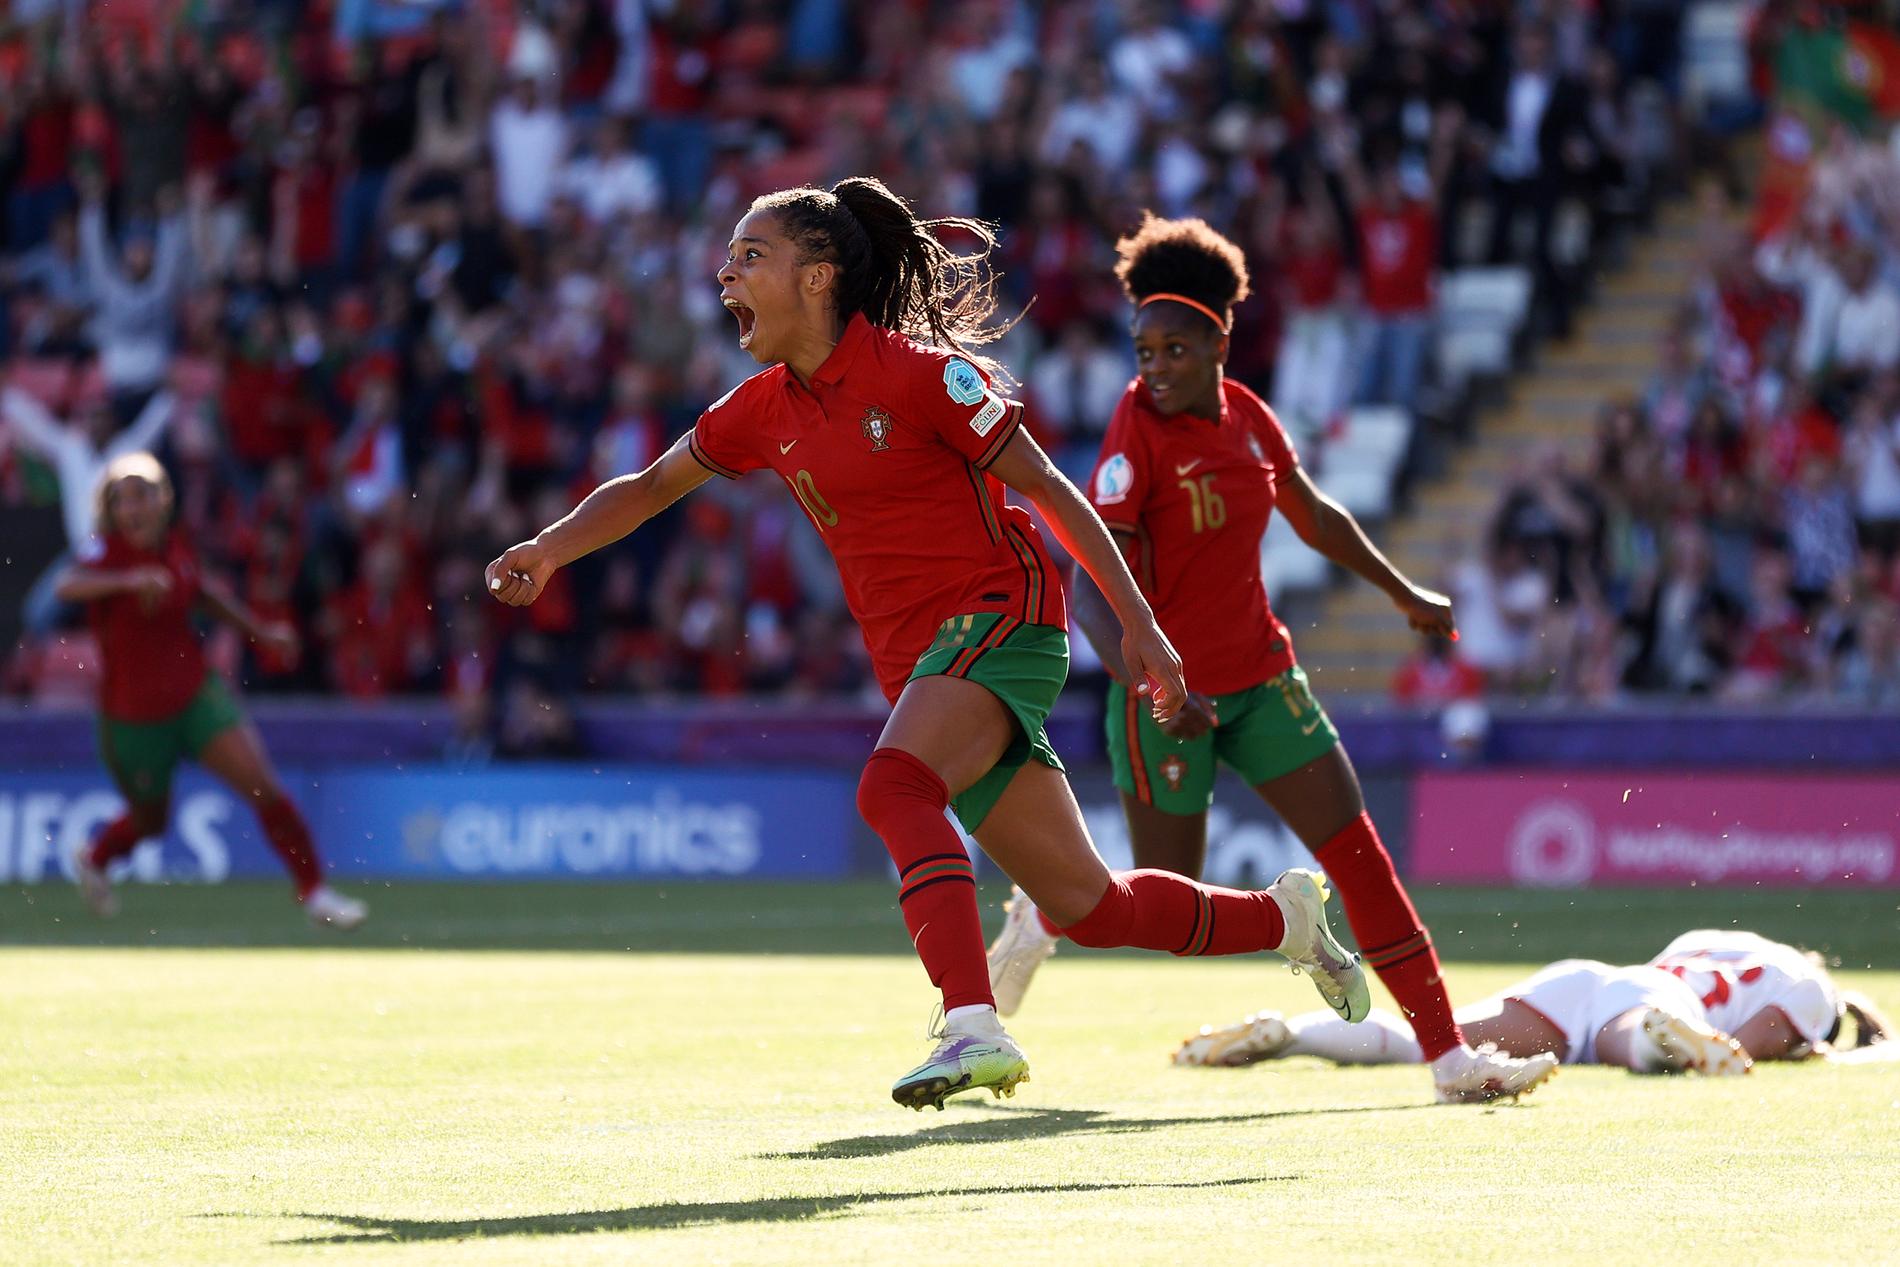 Portugal tog igen ett tvåmålsunderläge i matchen mot Schweiz. 